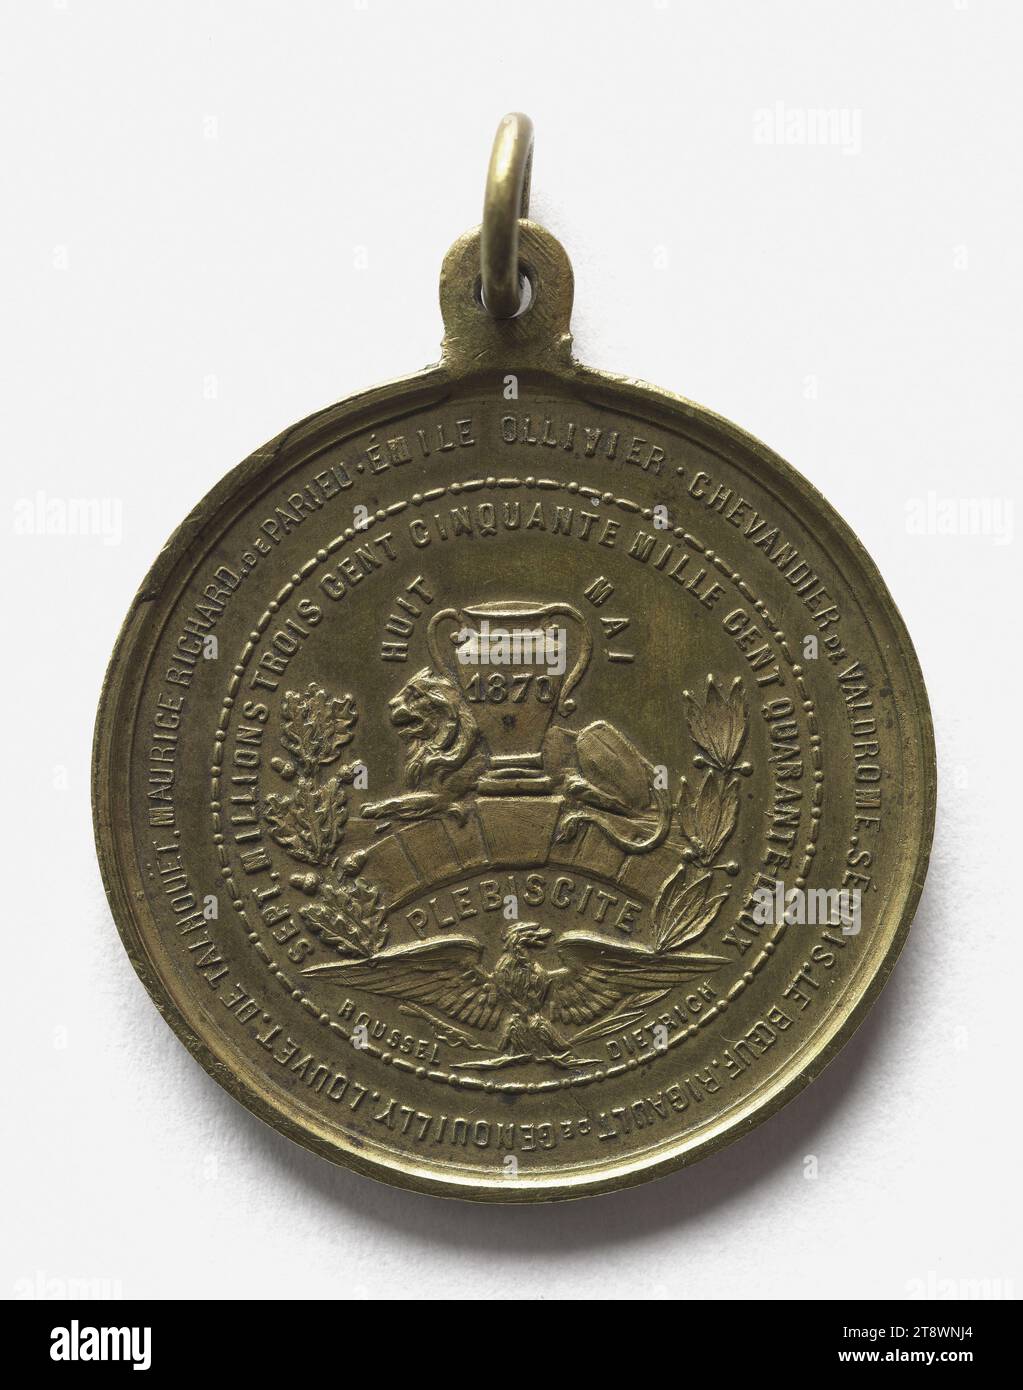 Last plebiscite proposed by Napoleon III (1808-1873), May 8, 1870, Vieuxmaire, Graveur en médailles, Array, Numismatique, Médaille, Paris, Diameter: 3.5 cm, Weight (type dimension): 16.39 g Stock Photo